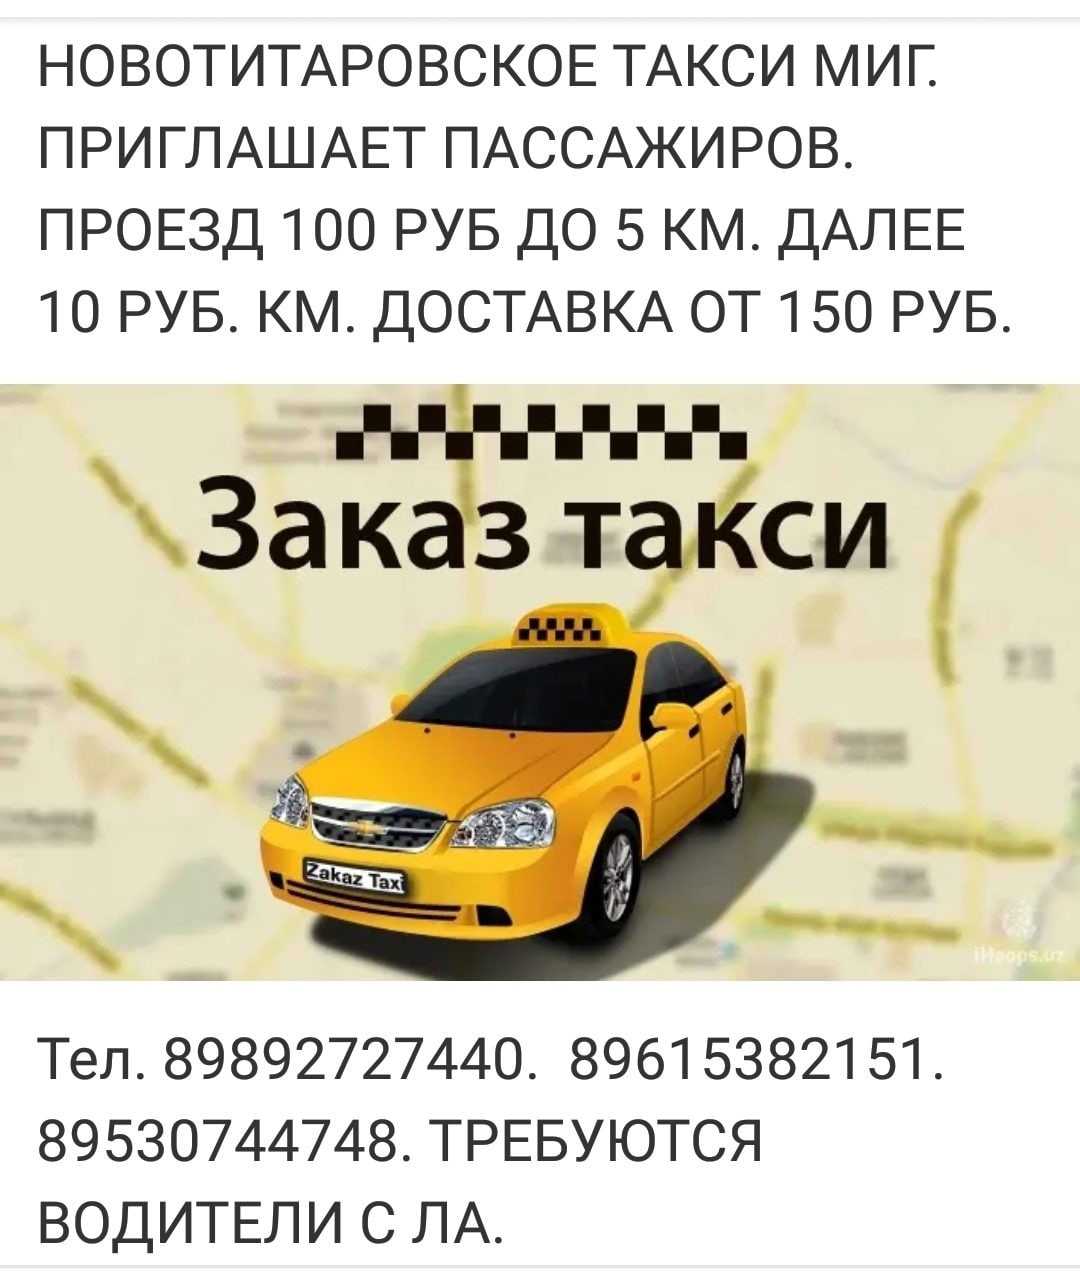 Такси каскад номер телефона. Закажи такси. Такси Динская. Такси Новотитаровская. Такси миг.